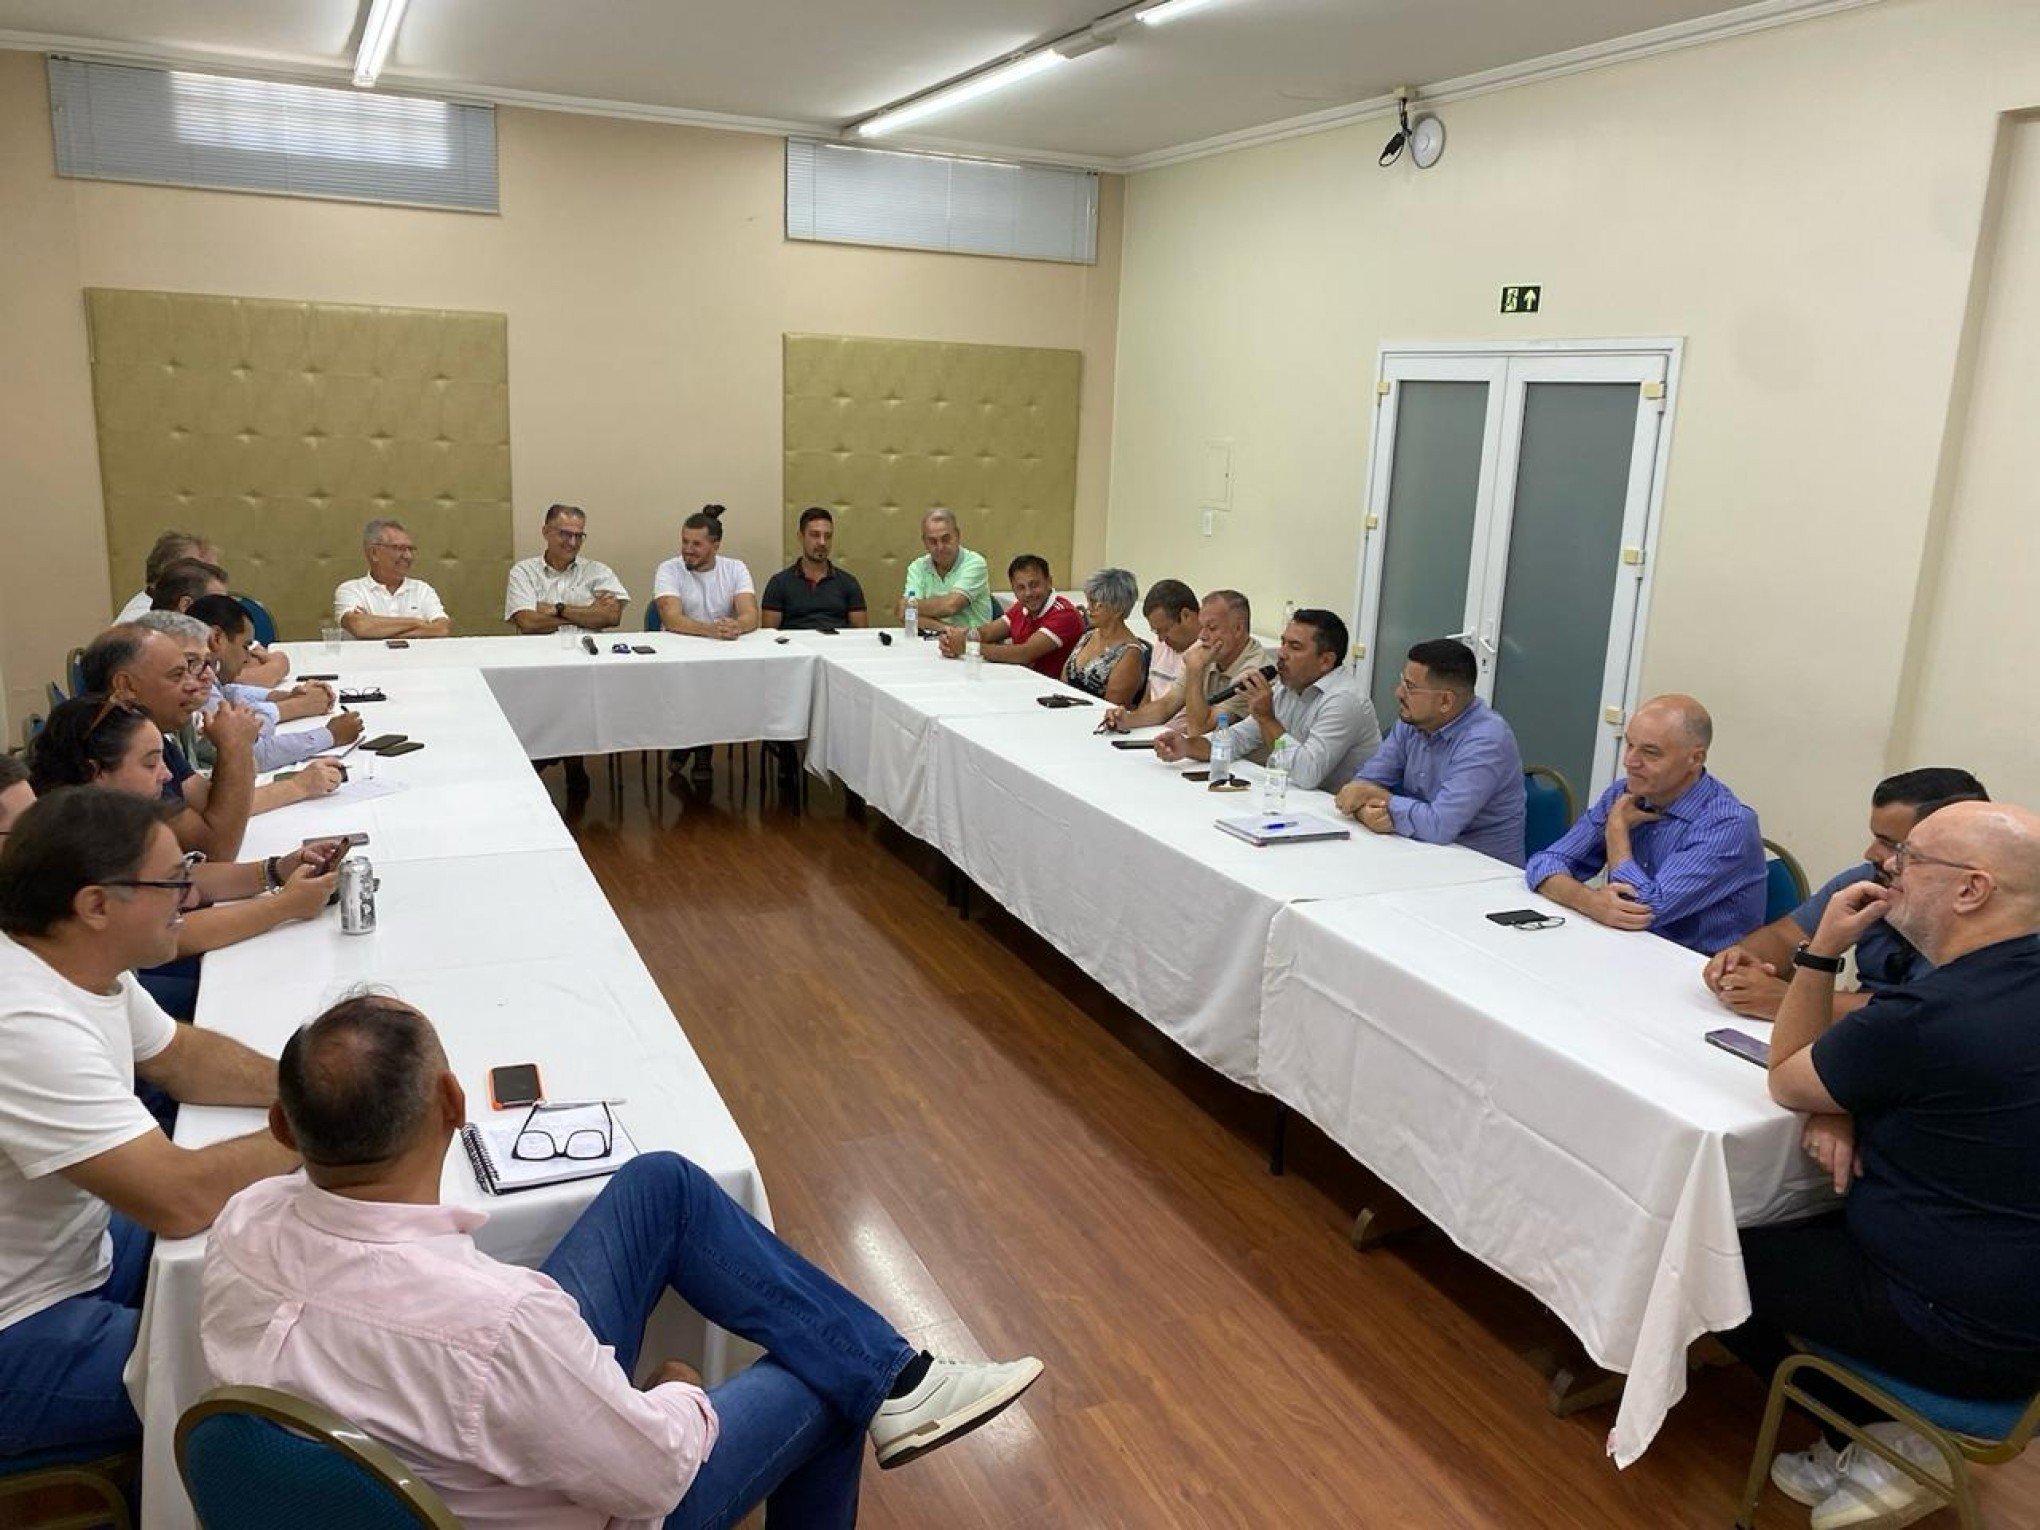 Jairo Jorge e Luiz Carlos Busato se reúnem com vereadores para debater a política em Canoas